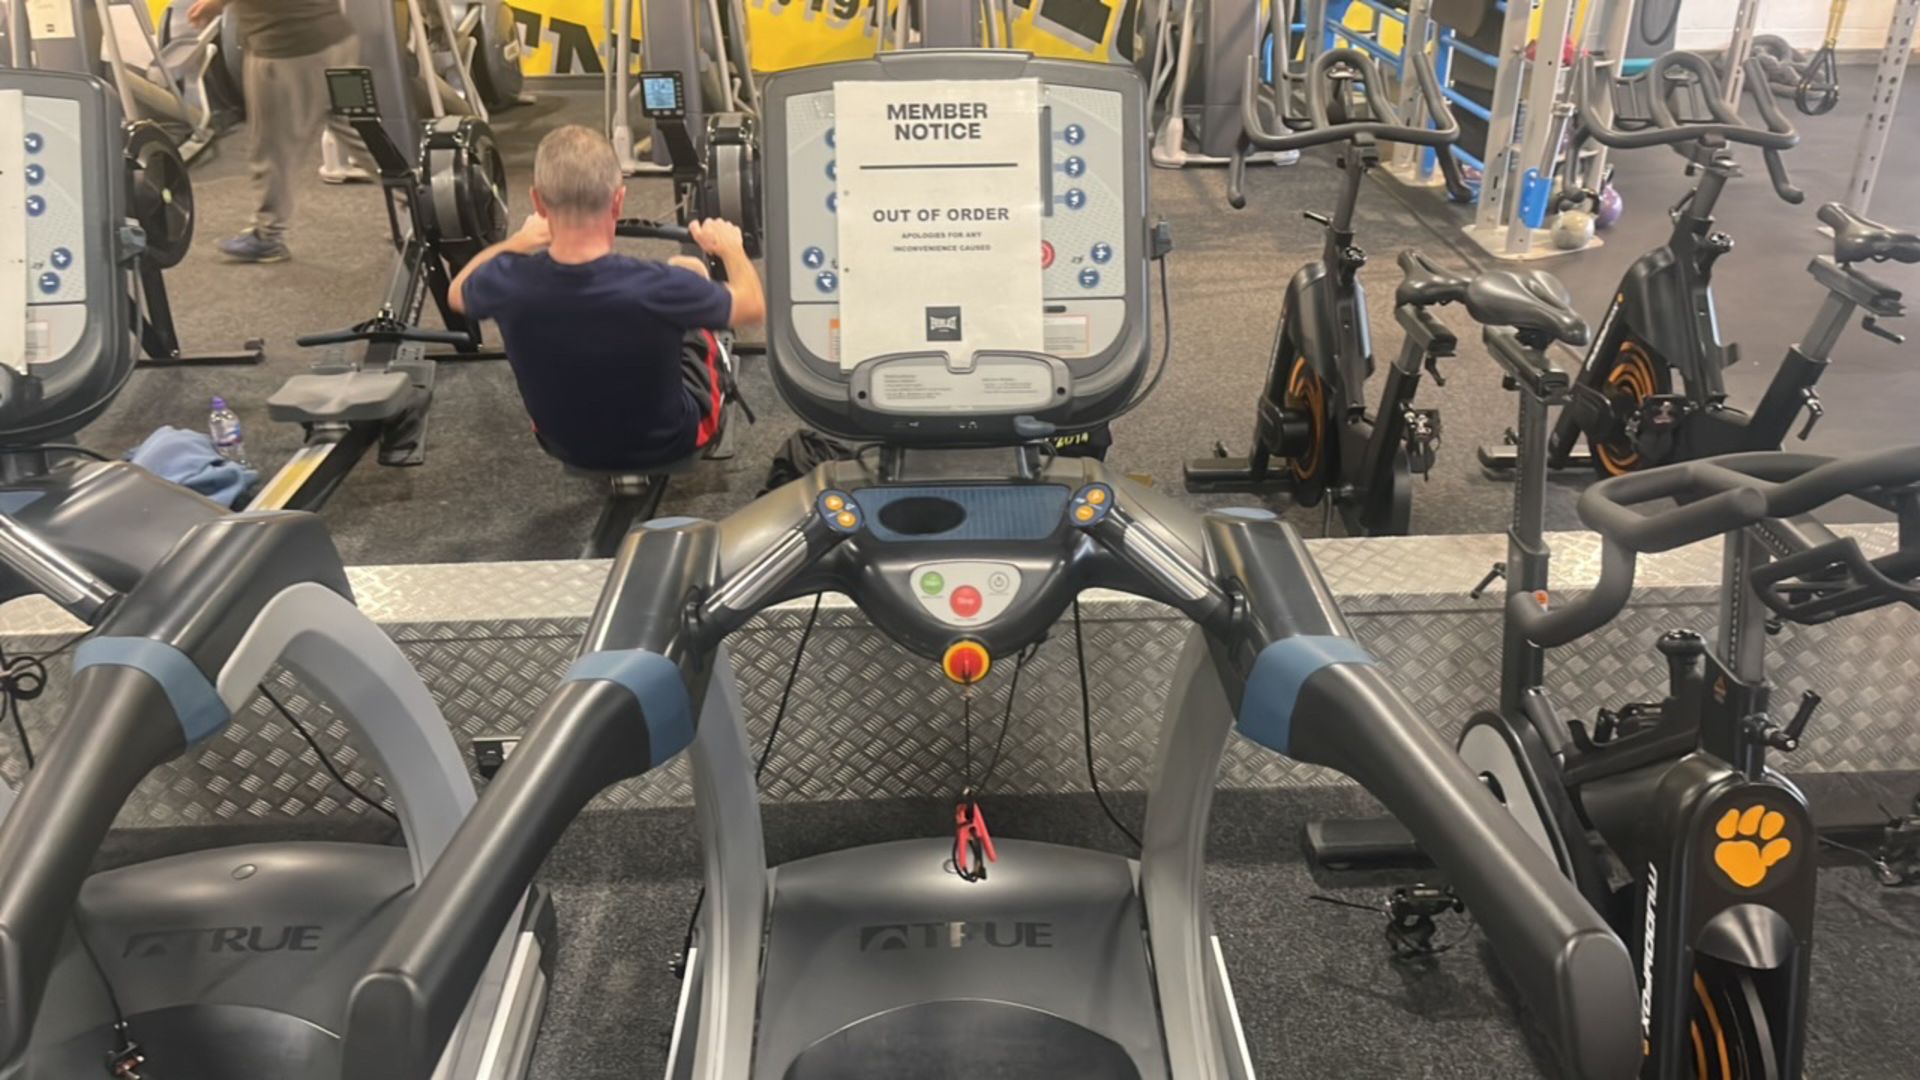 True Fitness Treadmill - Image 3 of 5